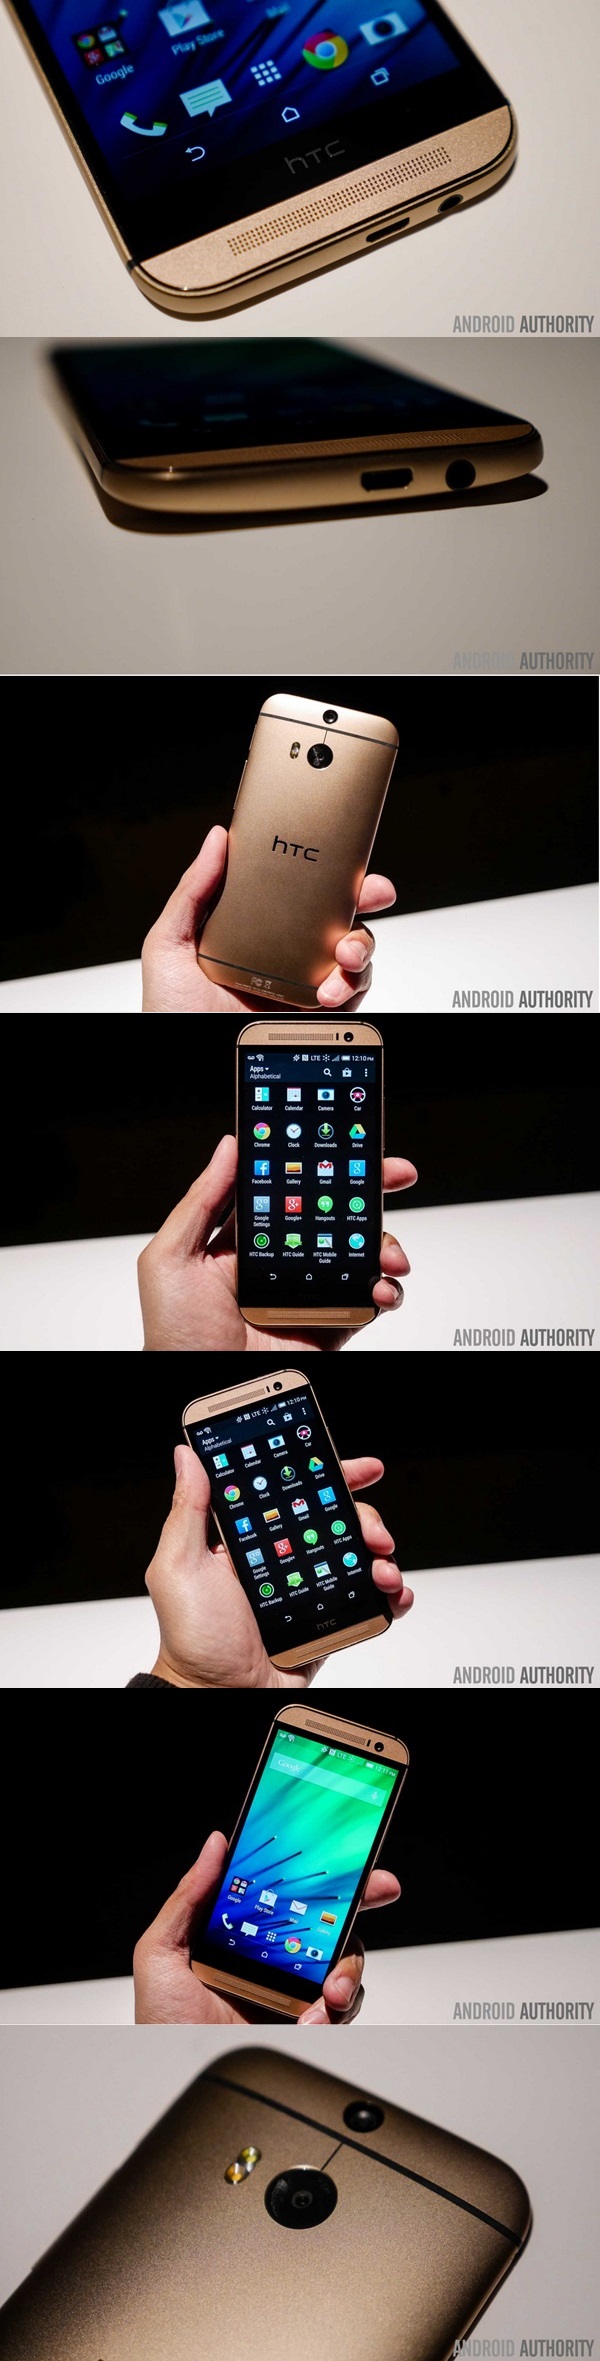 หรูเริ่ด ! ชมภาพ HTC One M8 สีทองแบบชัด ๆ ทุกมุมมอง